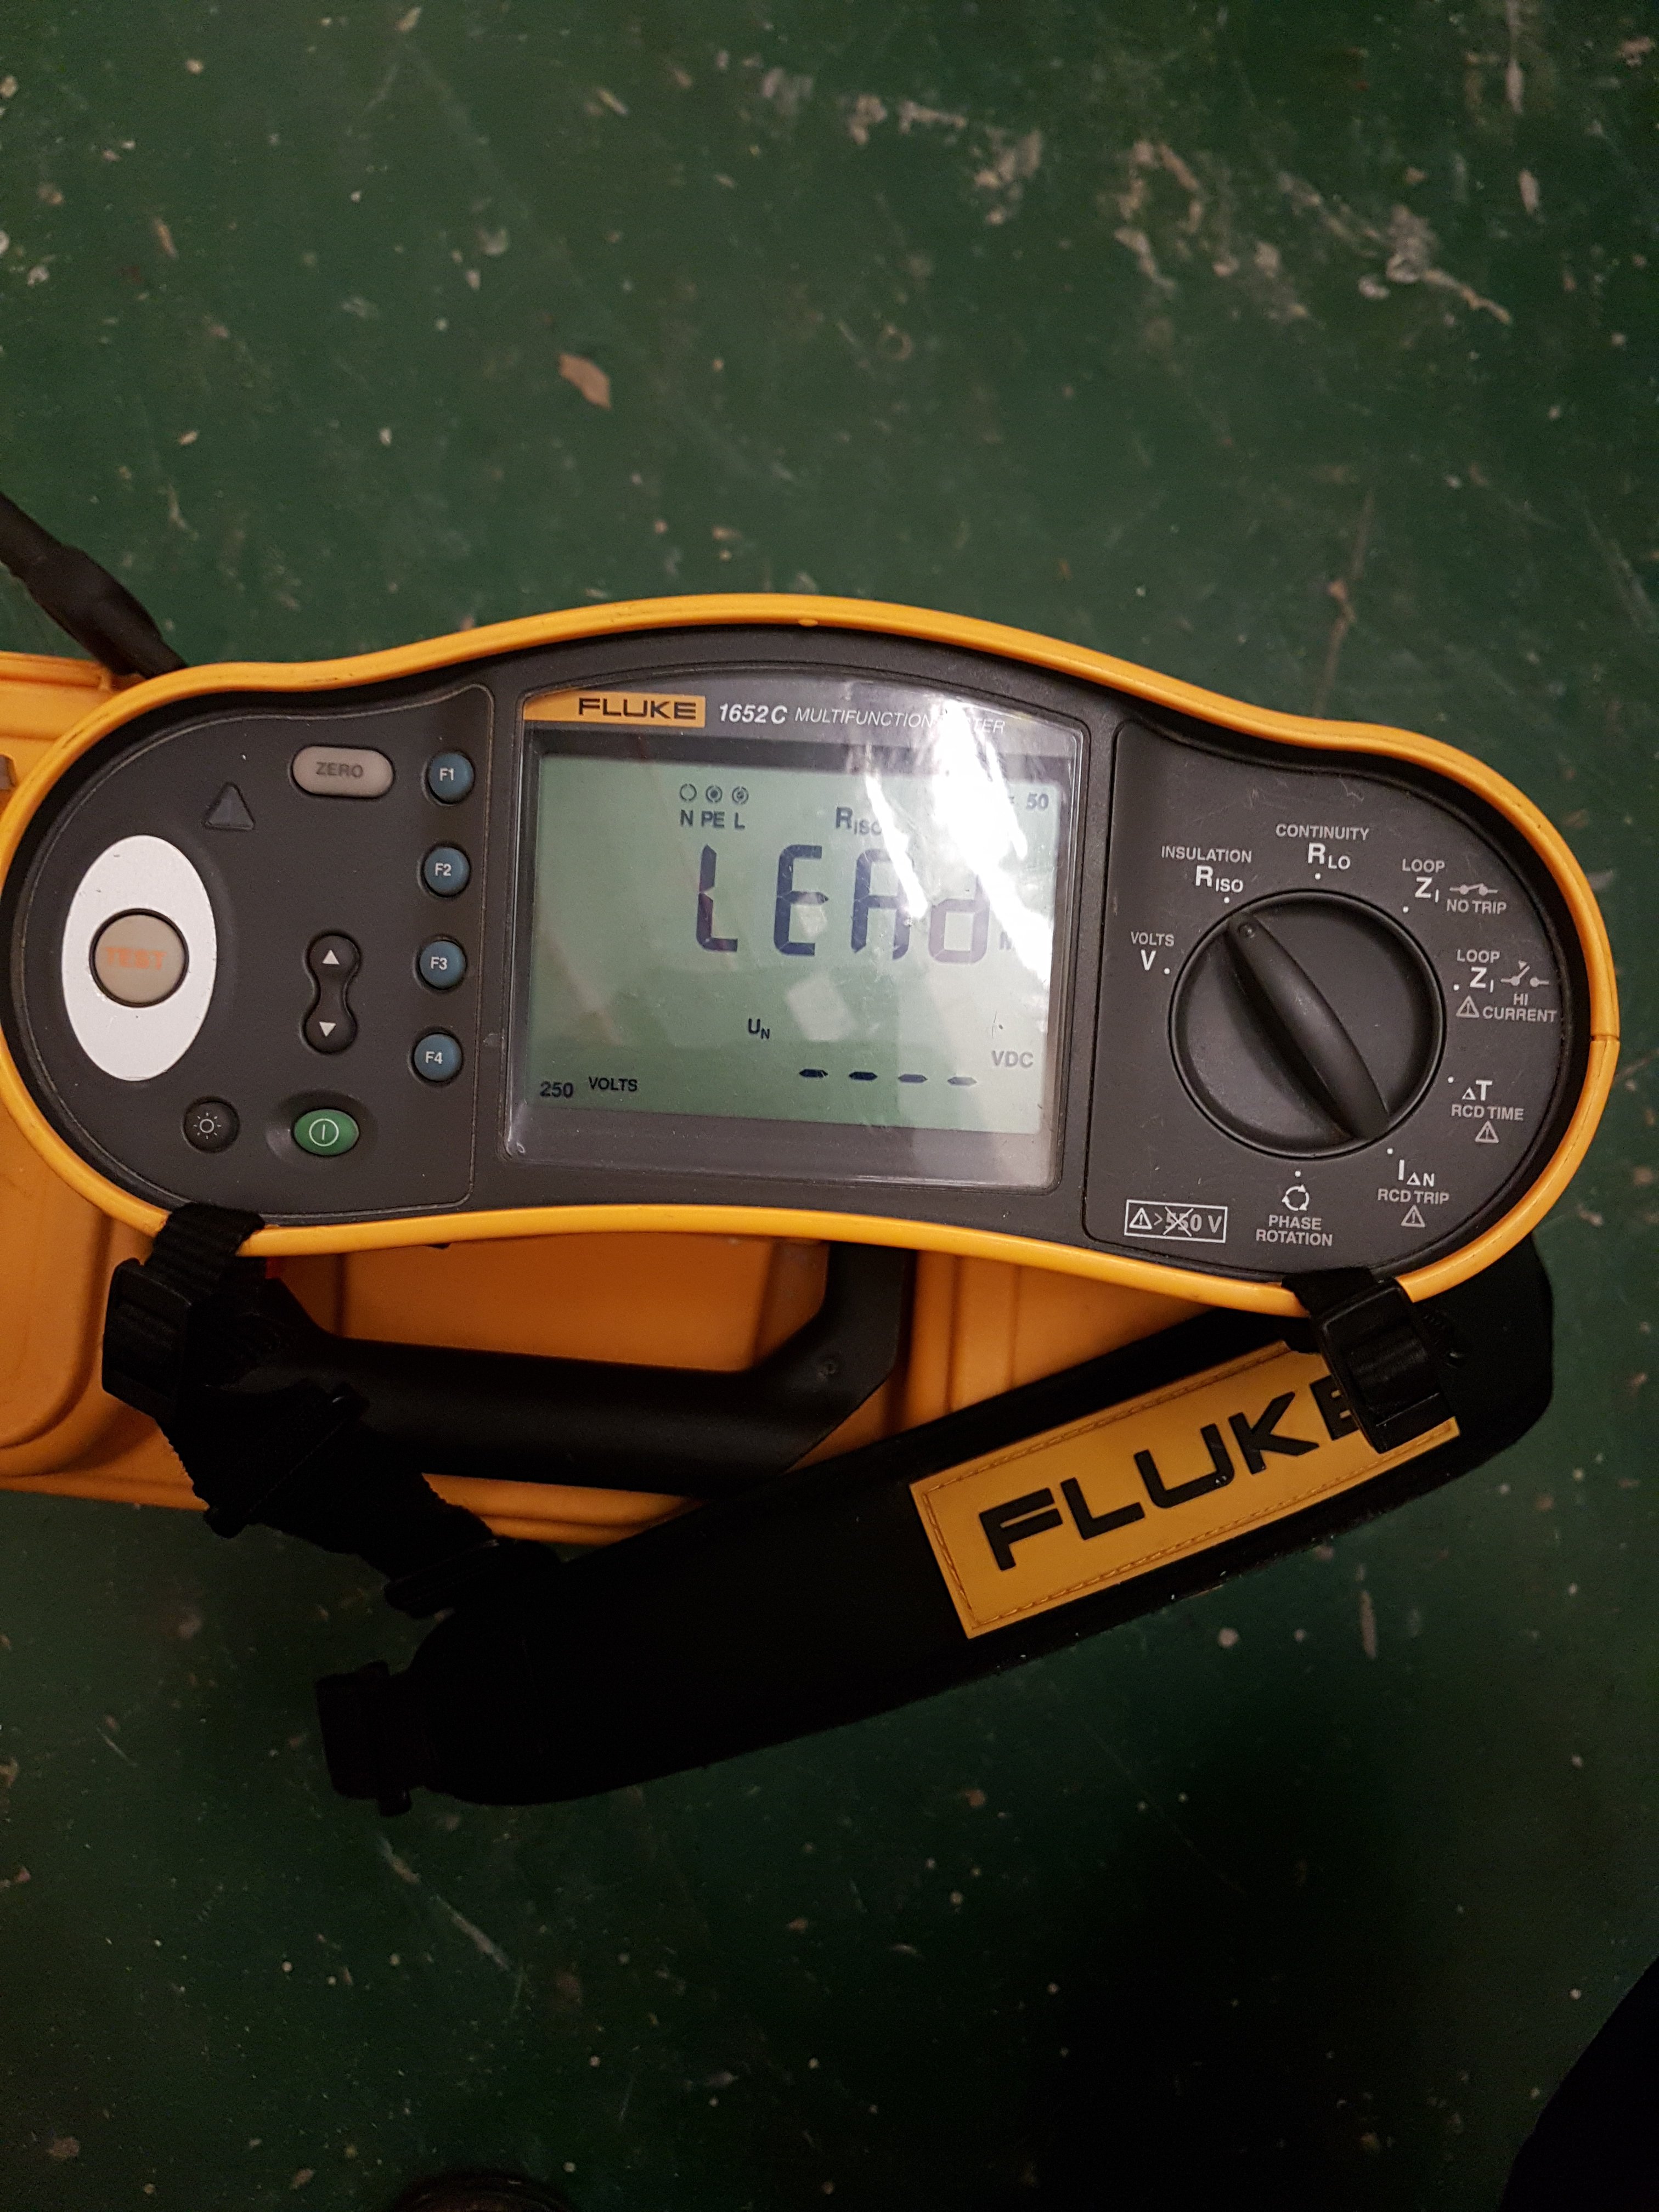 Fluke 1652c multifunction tester 20181115_175215 - EletriciansForums.net